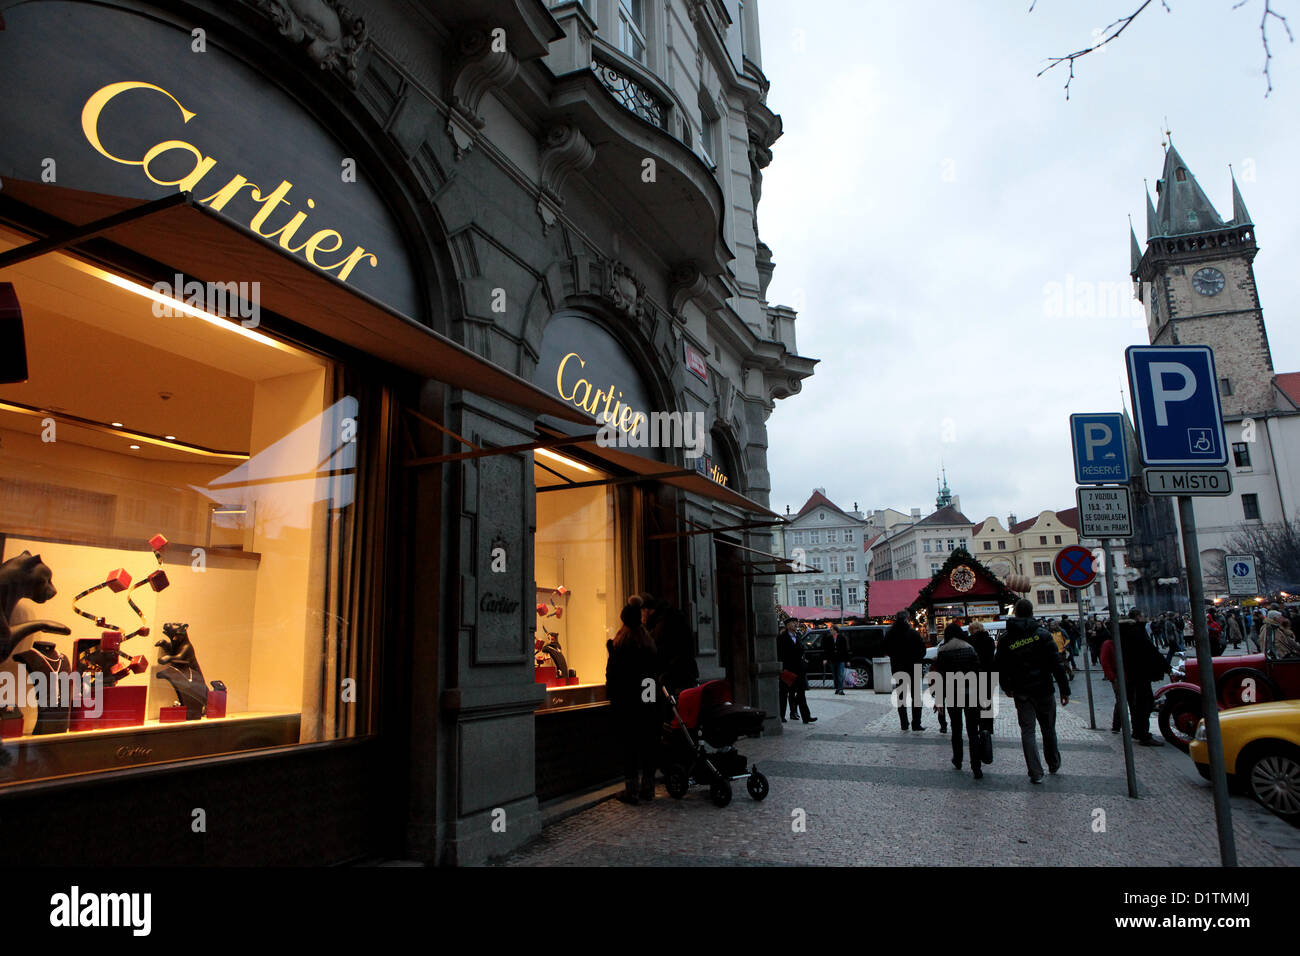 Cartier, fashion store in Parizska 